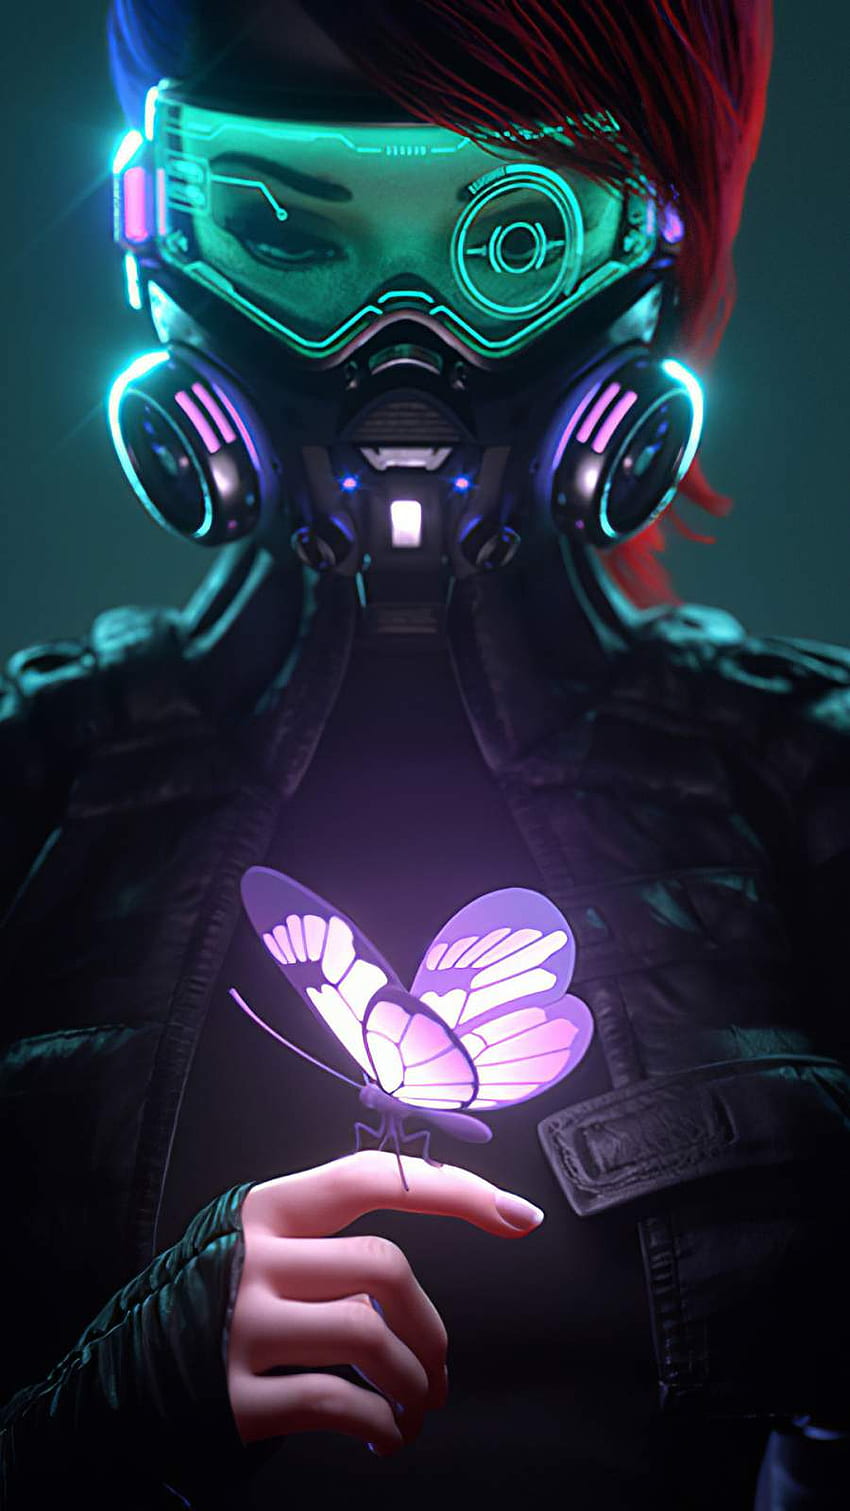 Ragazza cyberpunk in una maschera antigas che guarda la farfalla luminosa IPhone - IPhone : iPhone Sfondo del telefono HD